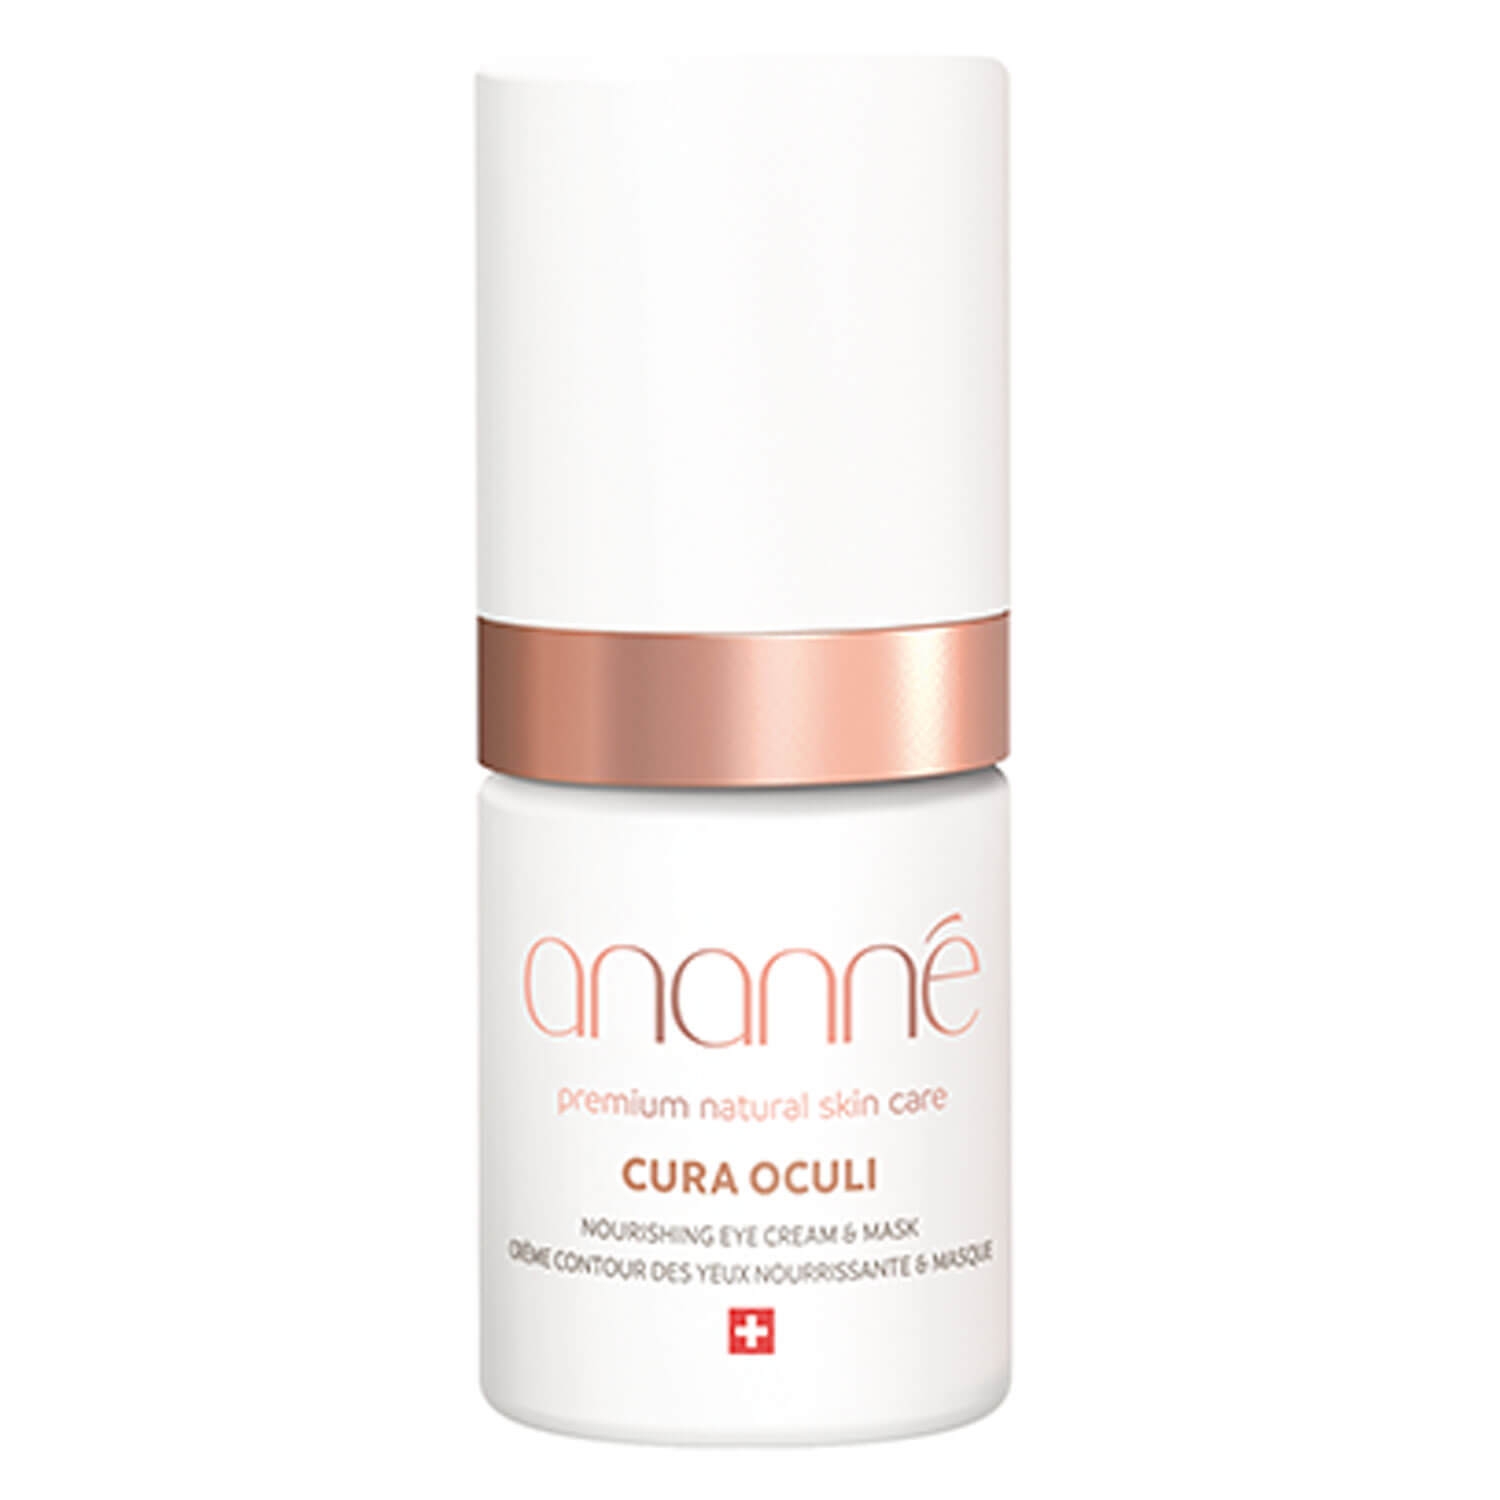 Produktbild von Ananné - Cura Oculi Nourishing Eye Cream & Mask